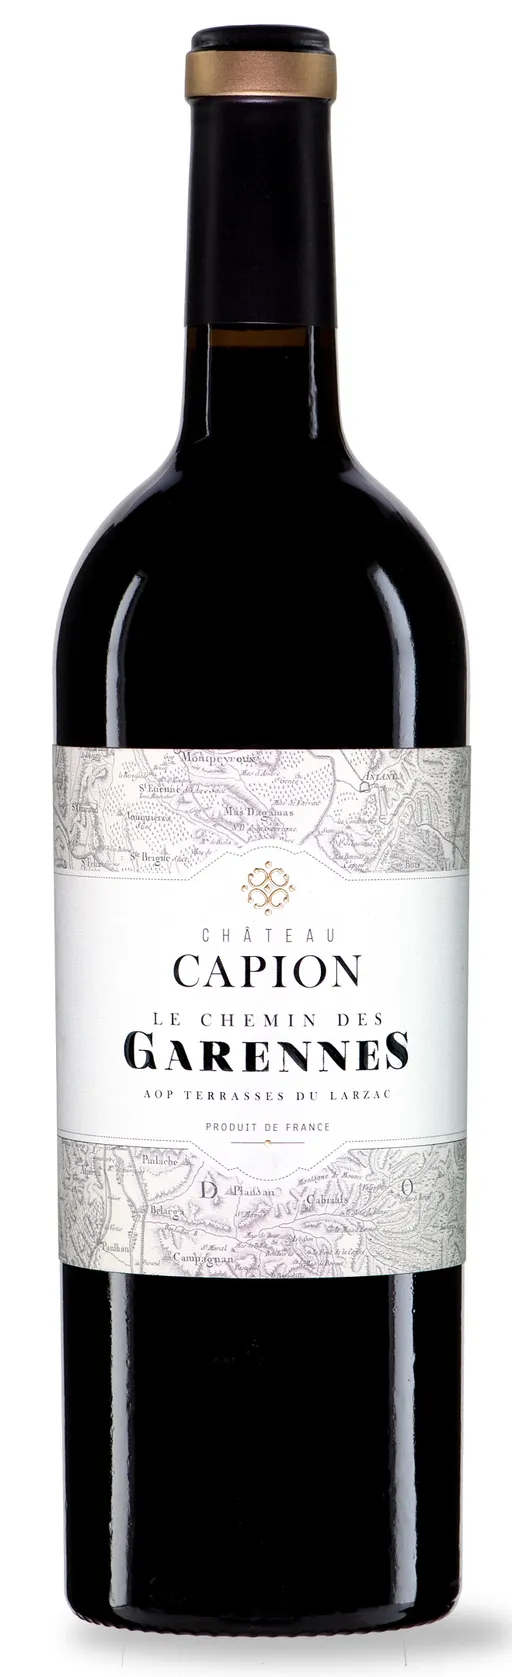 Château Capion Le Chemin des Garennes, Red, 2017, Terrasses du Larzac. Bottle image